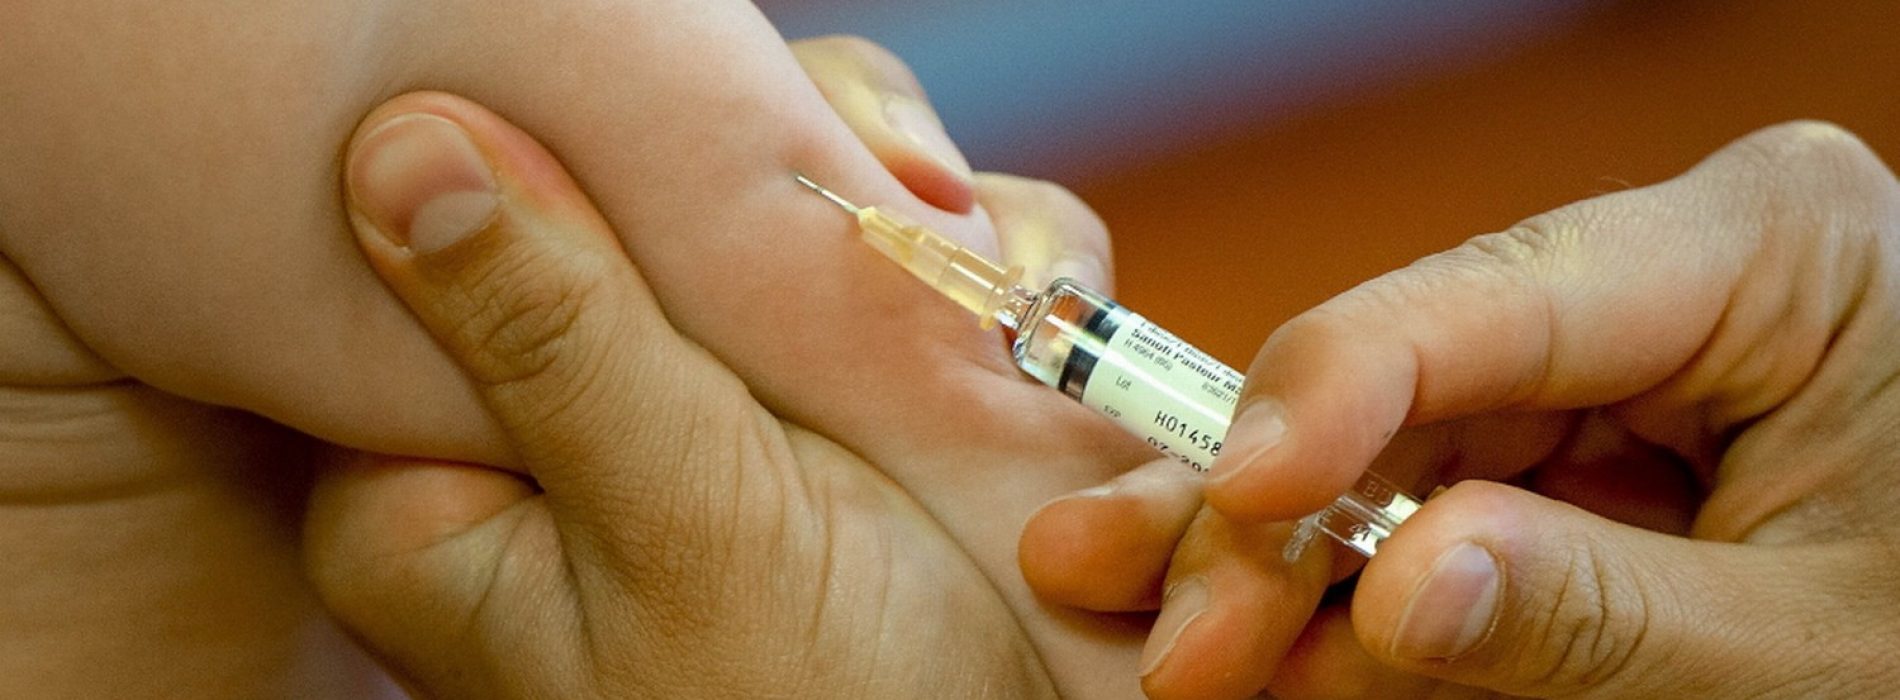 CDC-wetenschapper: “Documenten over verband tussen autisme en vaccins werden vernietigd”